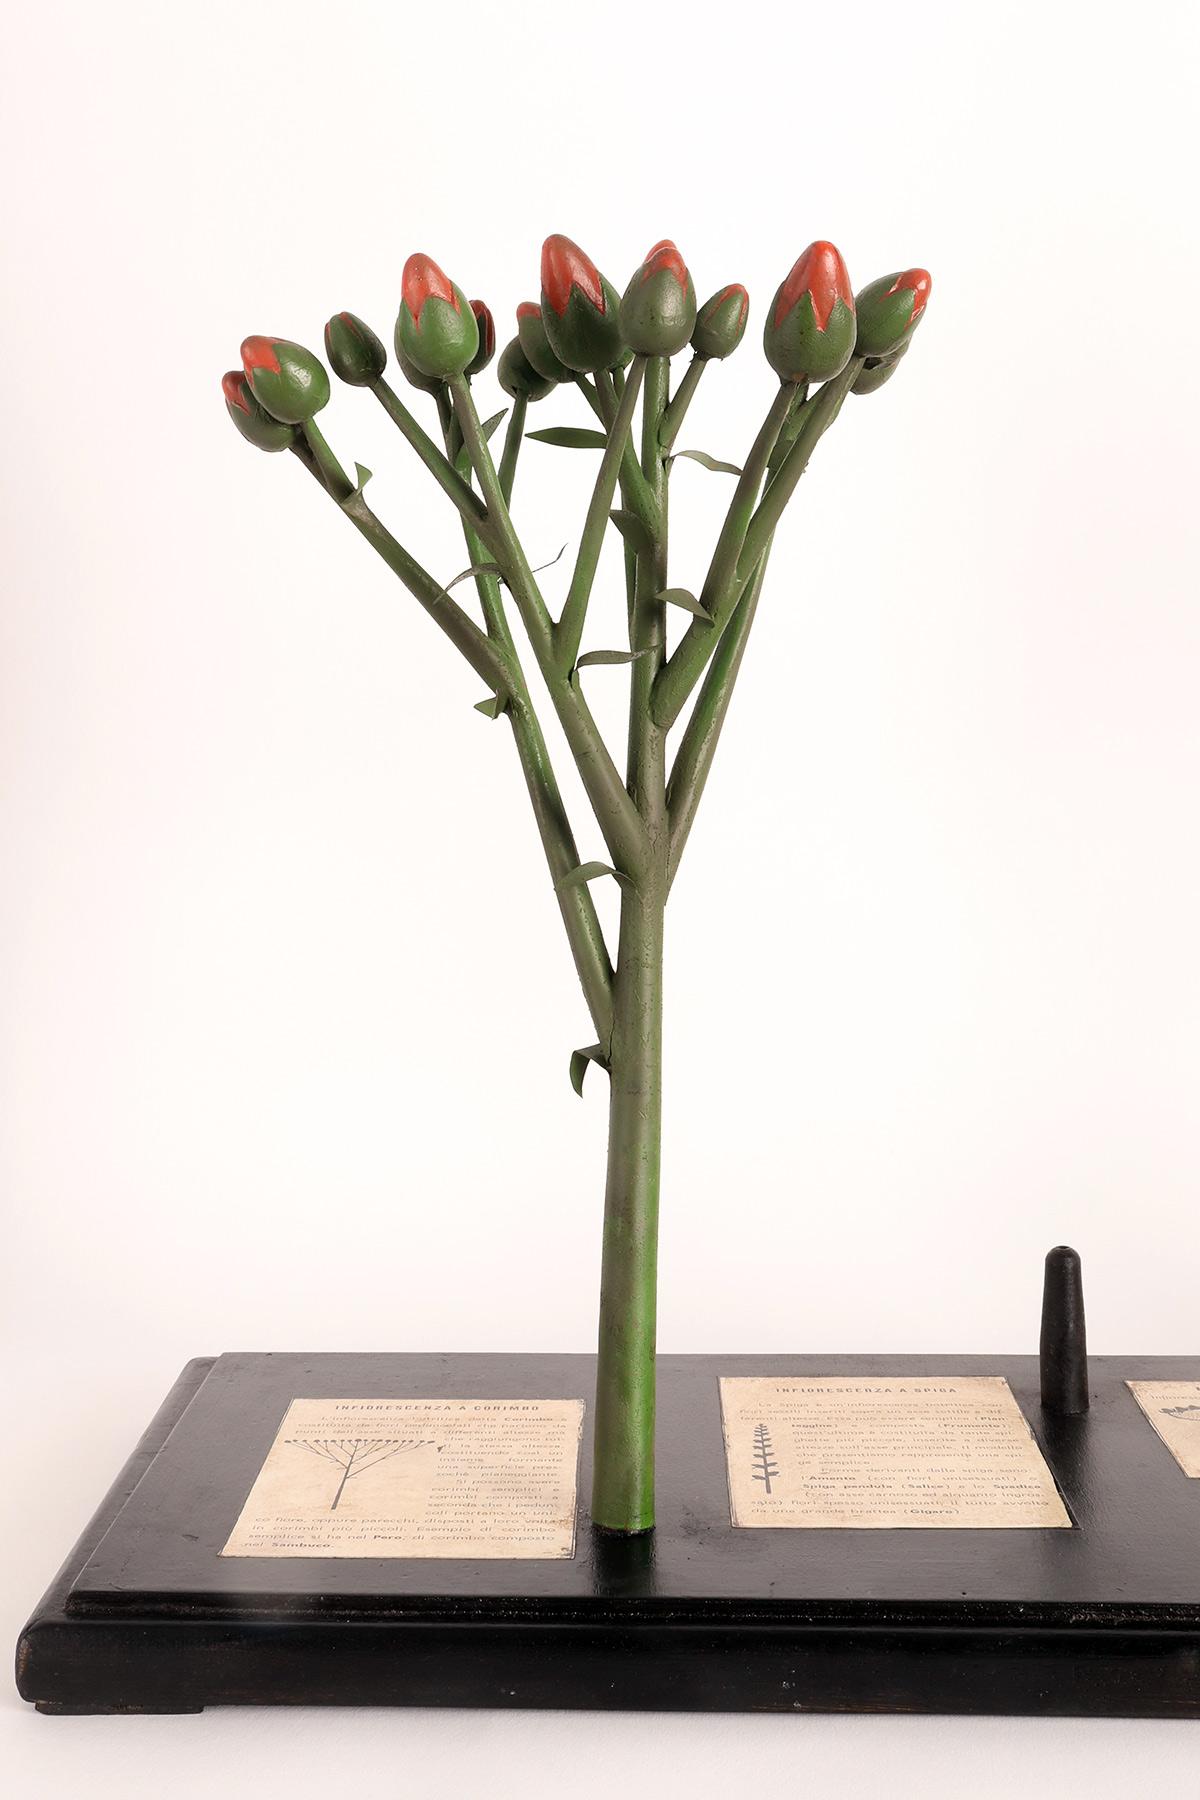 Un modèle botanique didactique rare des différents types d'inflorescences réalisé à partir de bourgeons rouges en plâtre peints à la main, de branches vertes en métal cuivré et d'un élément central en caoutchouc (le jaune). Monté sur un socle en